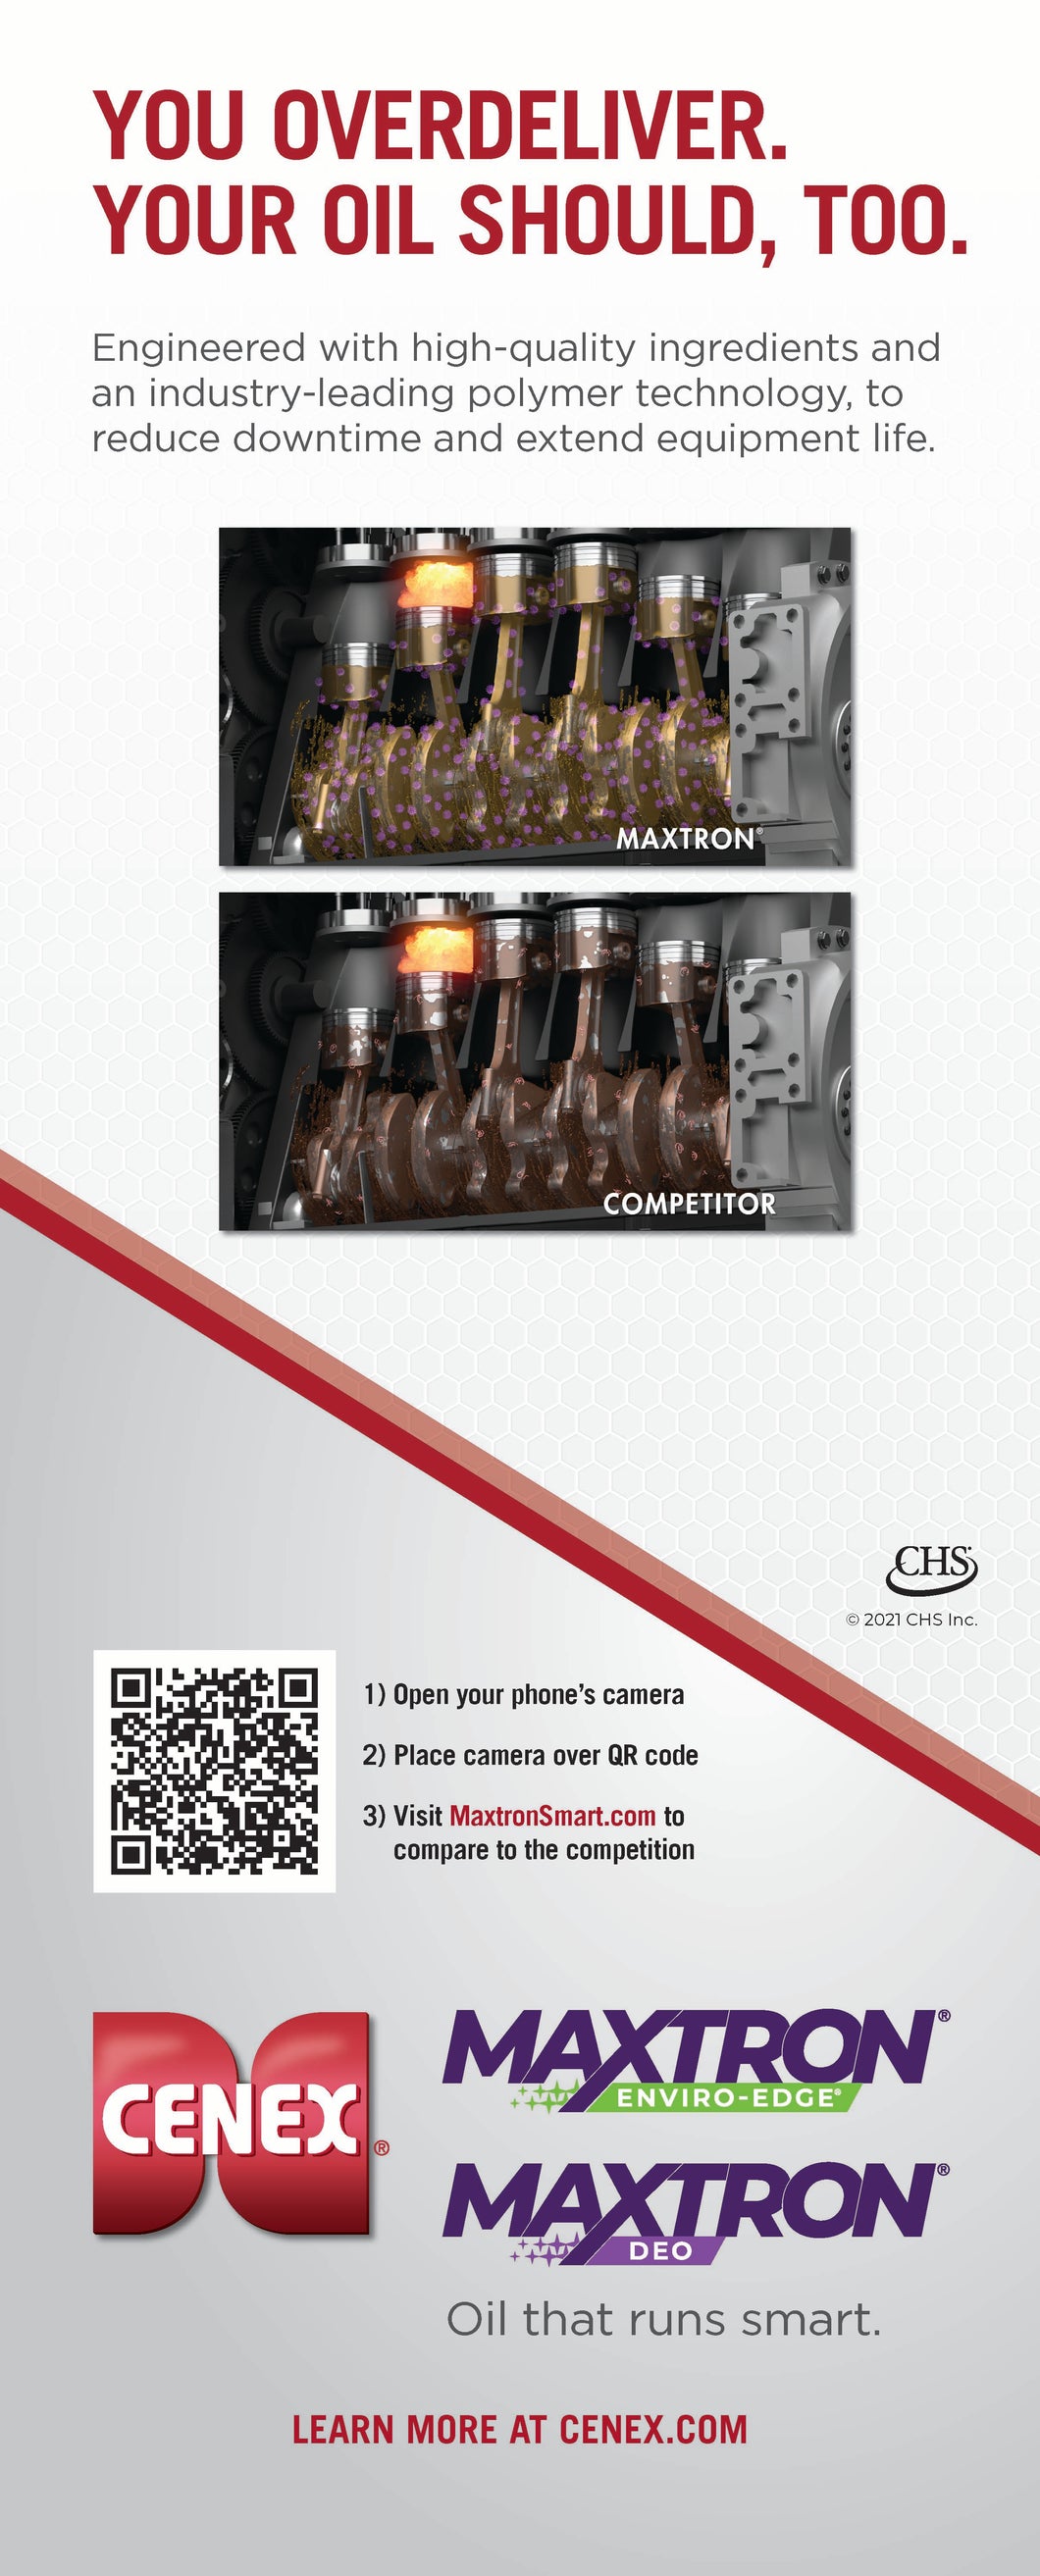 Maxtron Heavy Duty Diesel Engine Oils Interactive Pop-up Banner